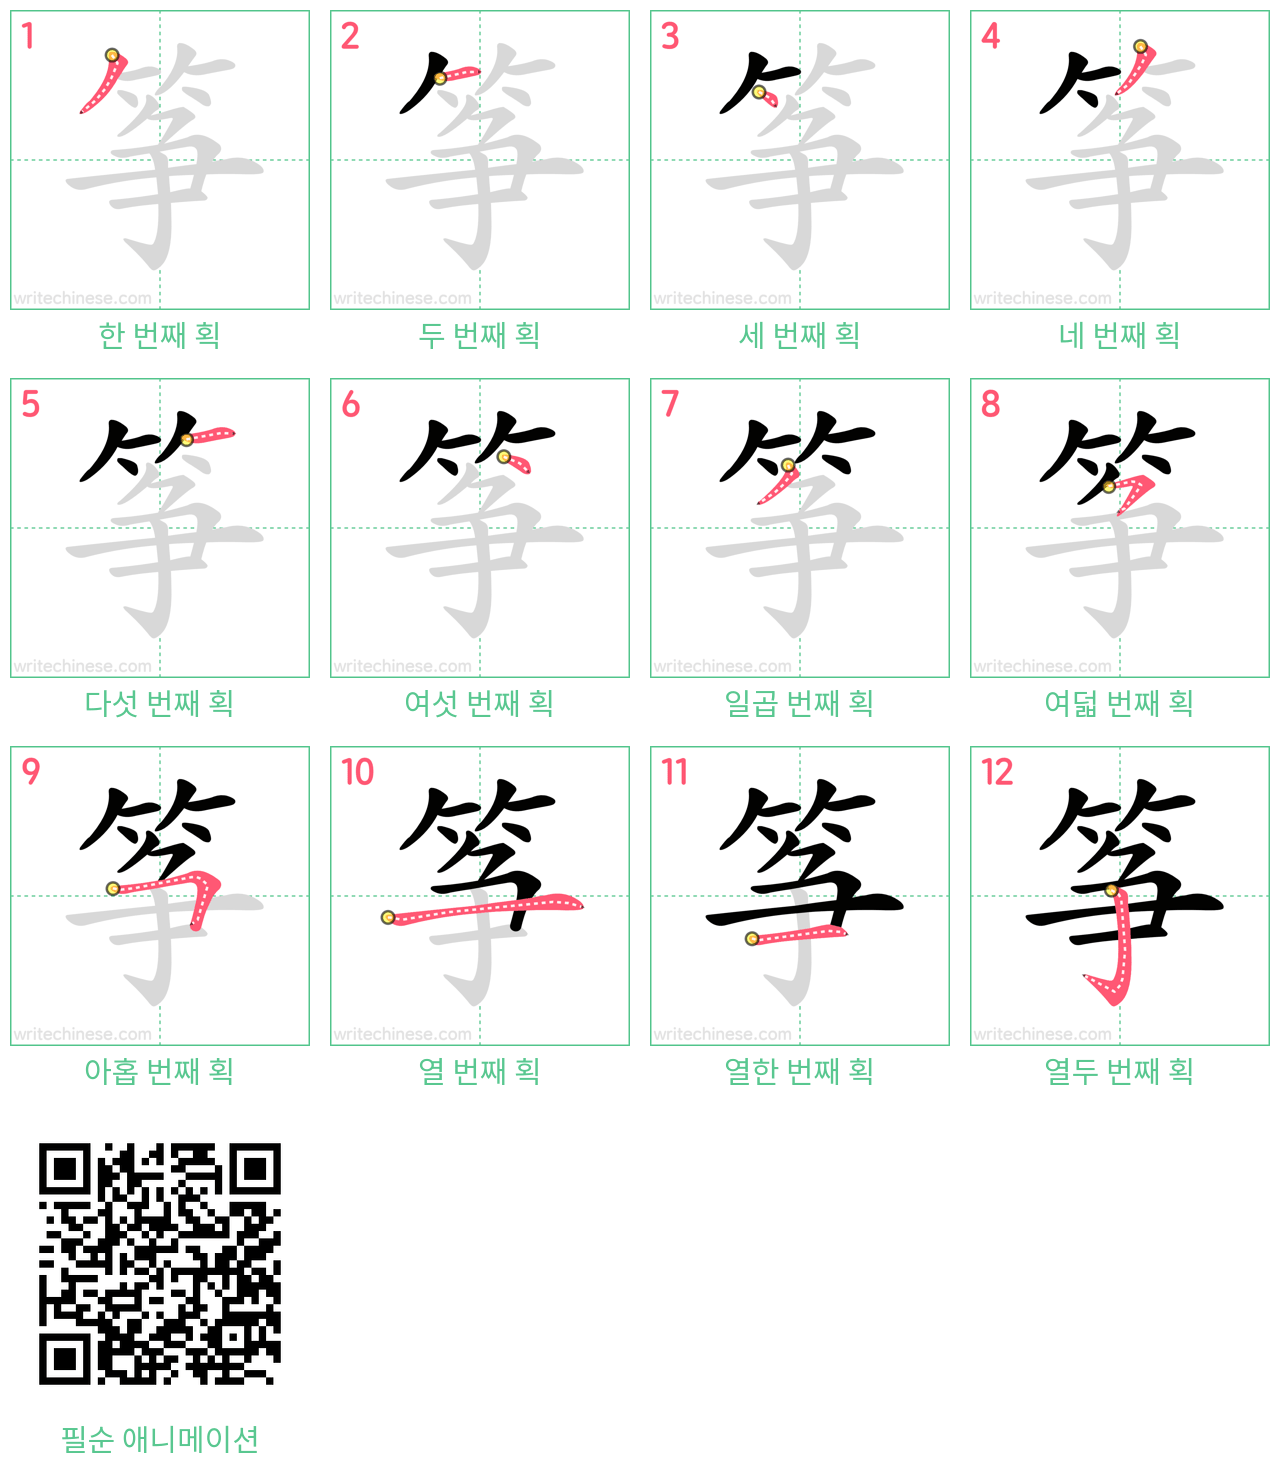 筝 step-by-step stroke order diagrams